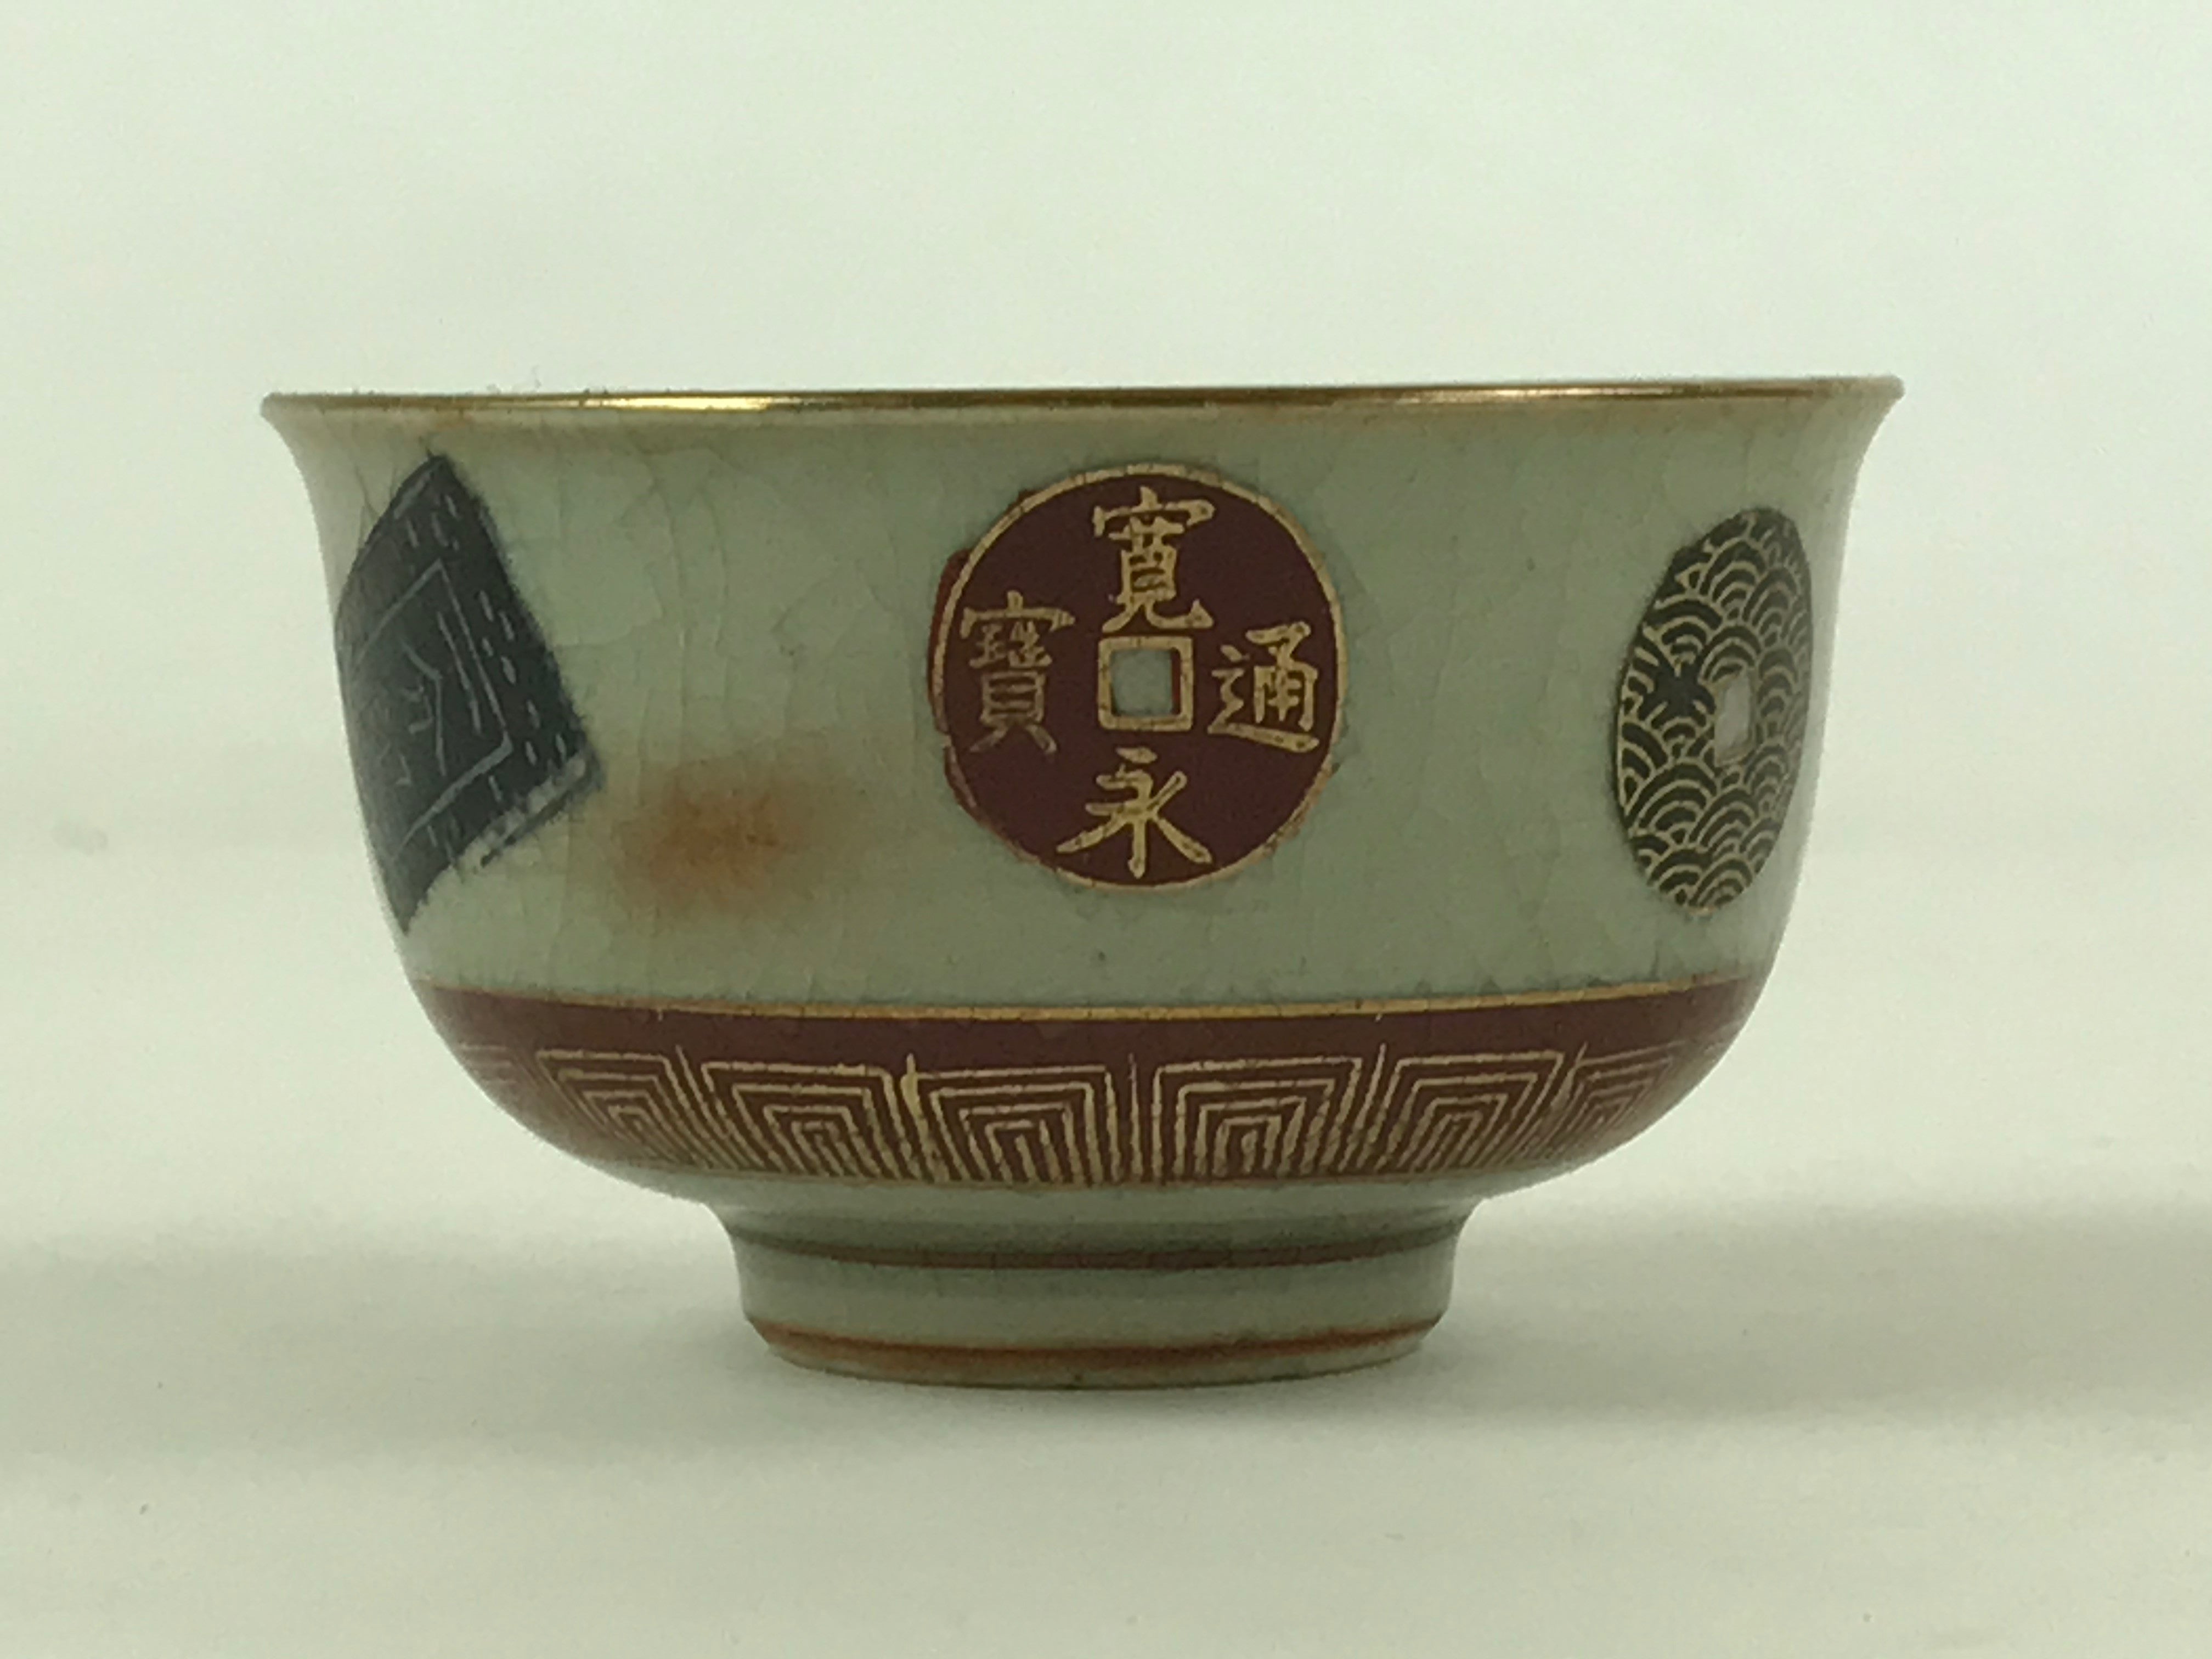 Japanese Porcelain Teacup Vtg Yunomi Pottery Crackle Glaze Light Green TC371